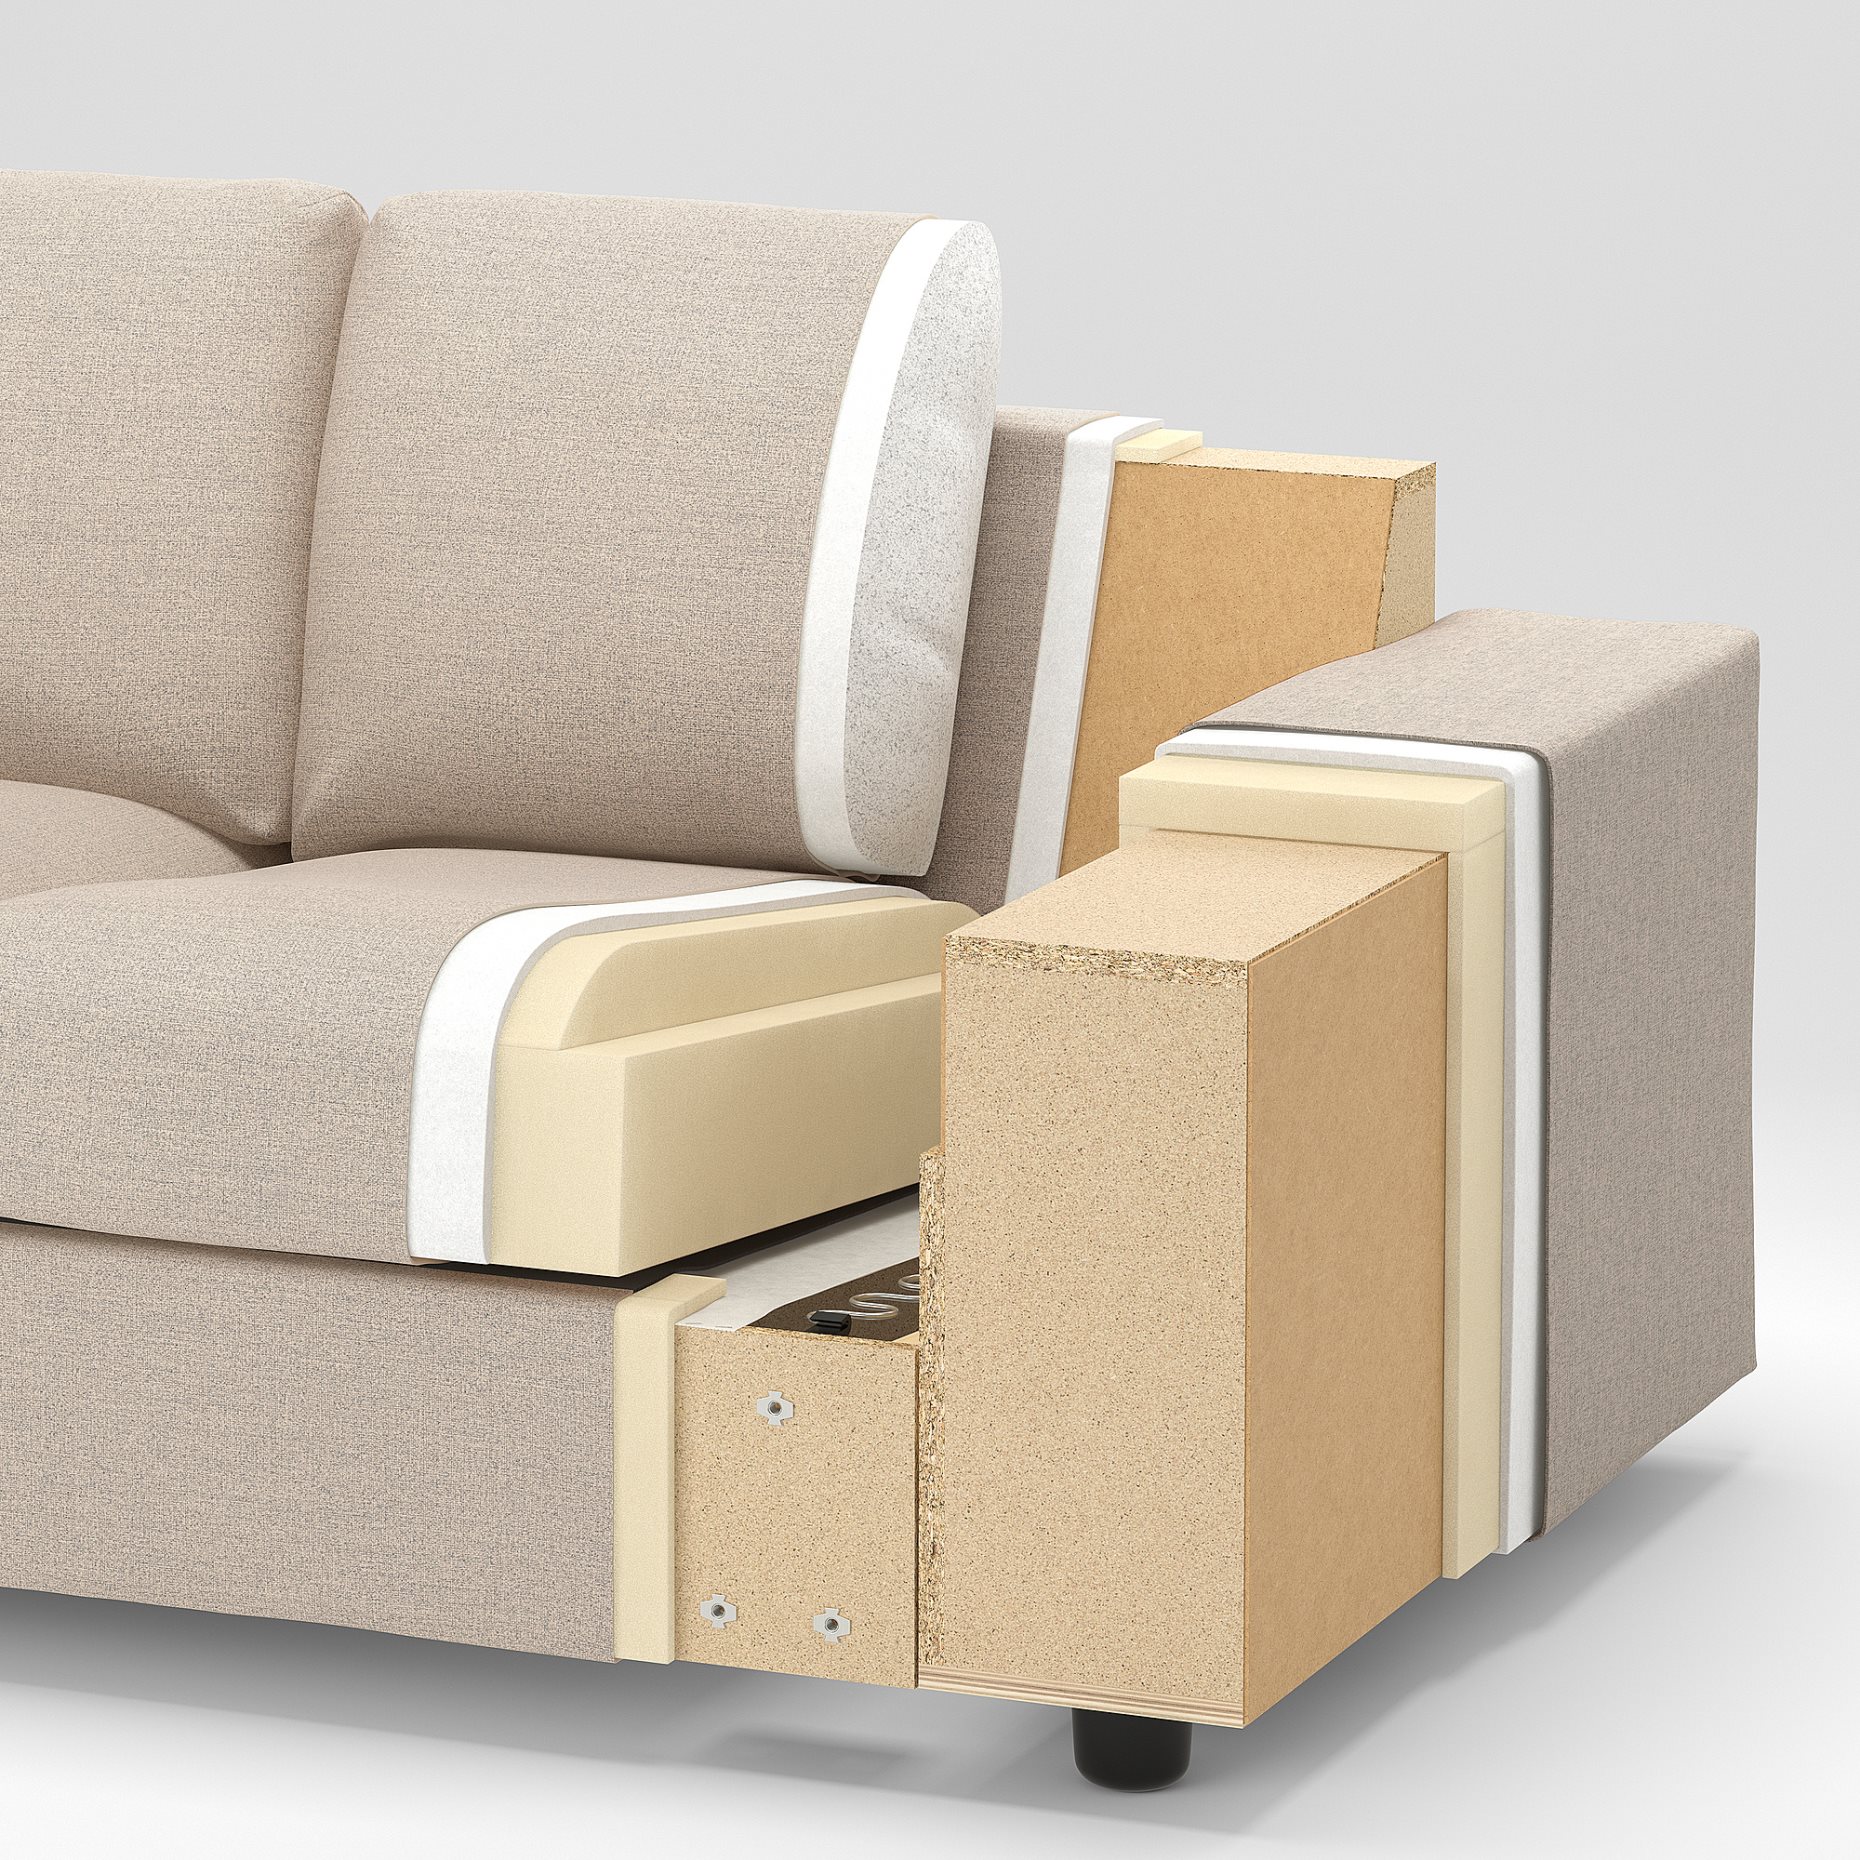 VIMLE, 4 θέσιος καναπές με σεζλόνγκ με πλατιά μπράτσα, 394.017.75